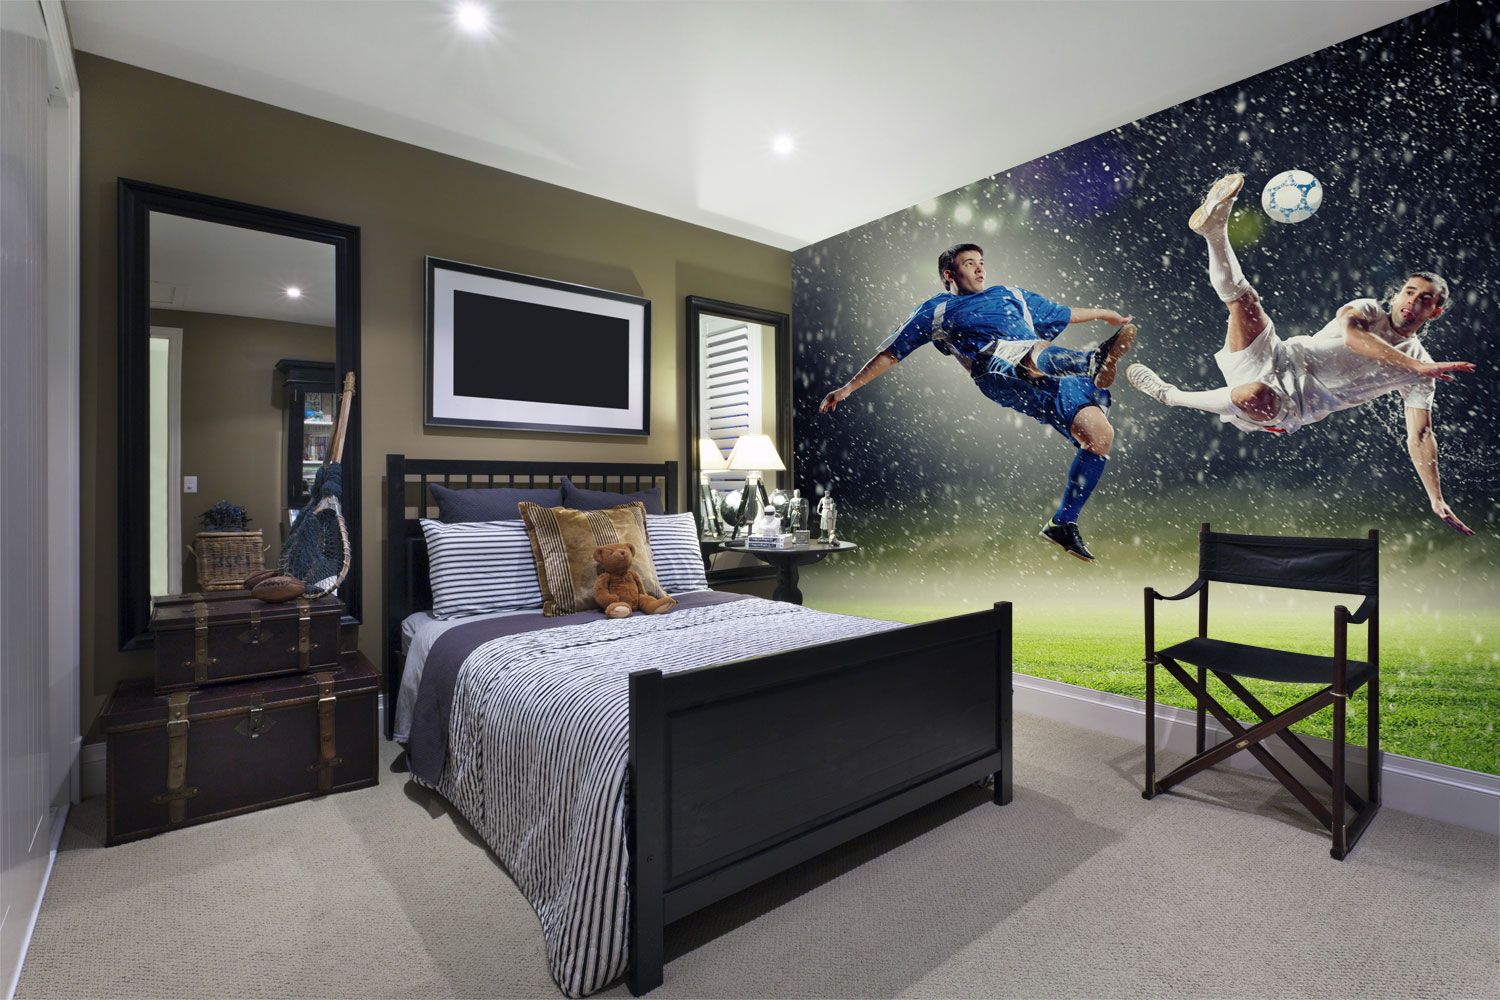 Football-wallpaper-in-boys-bedroom